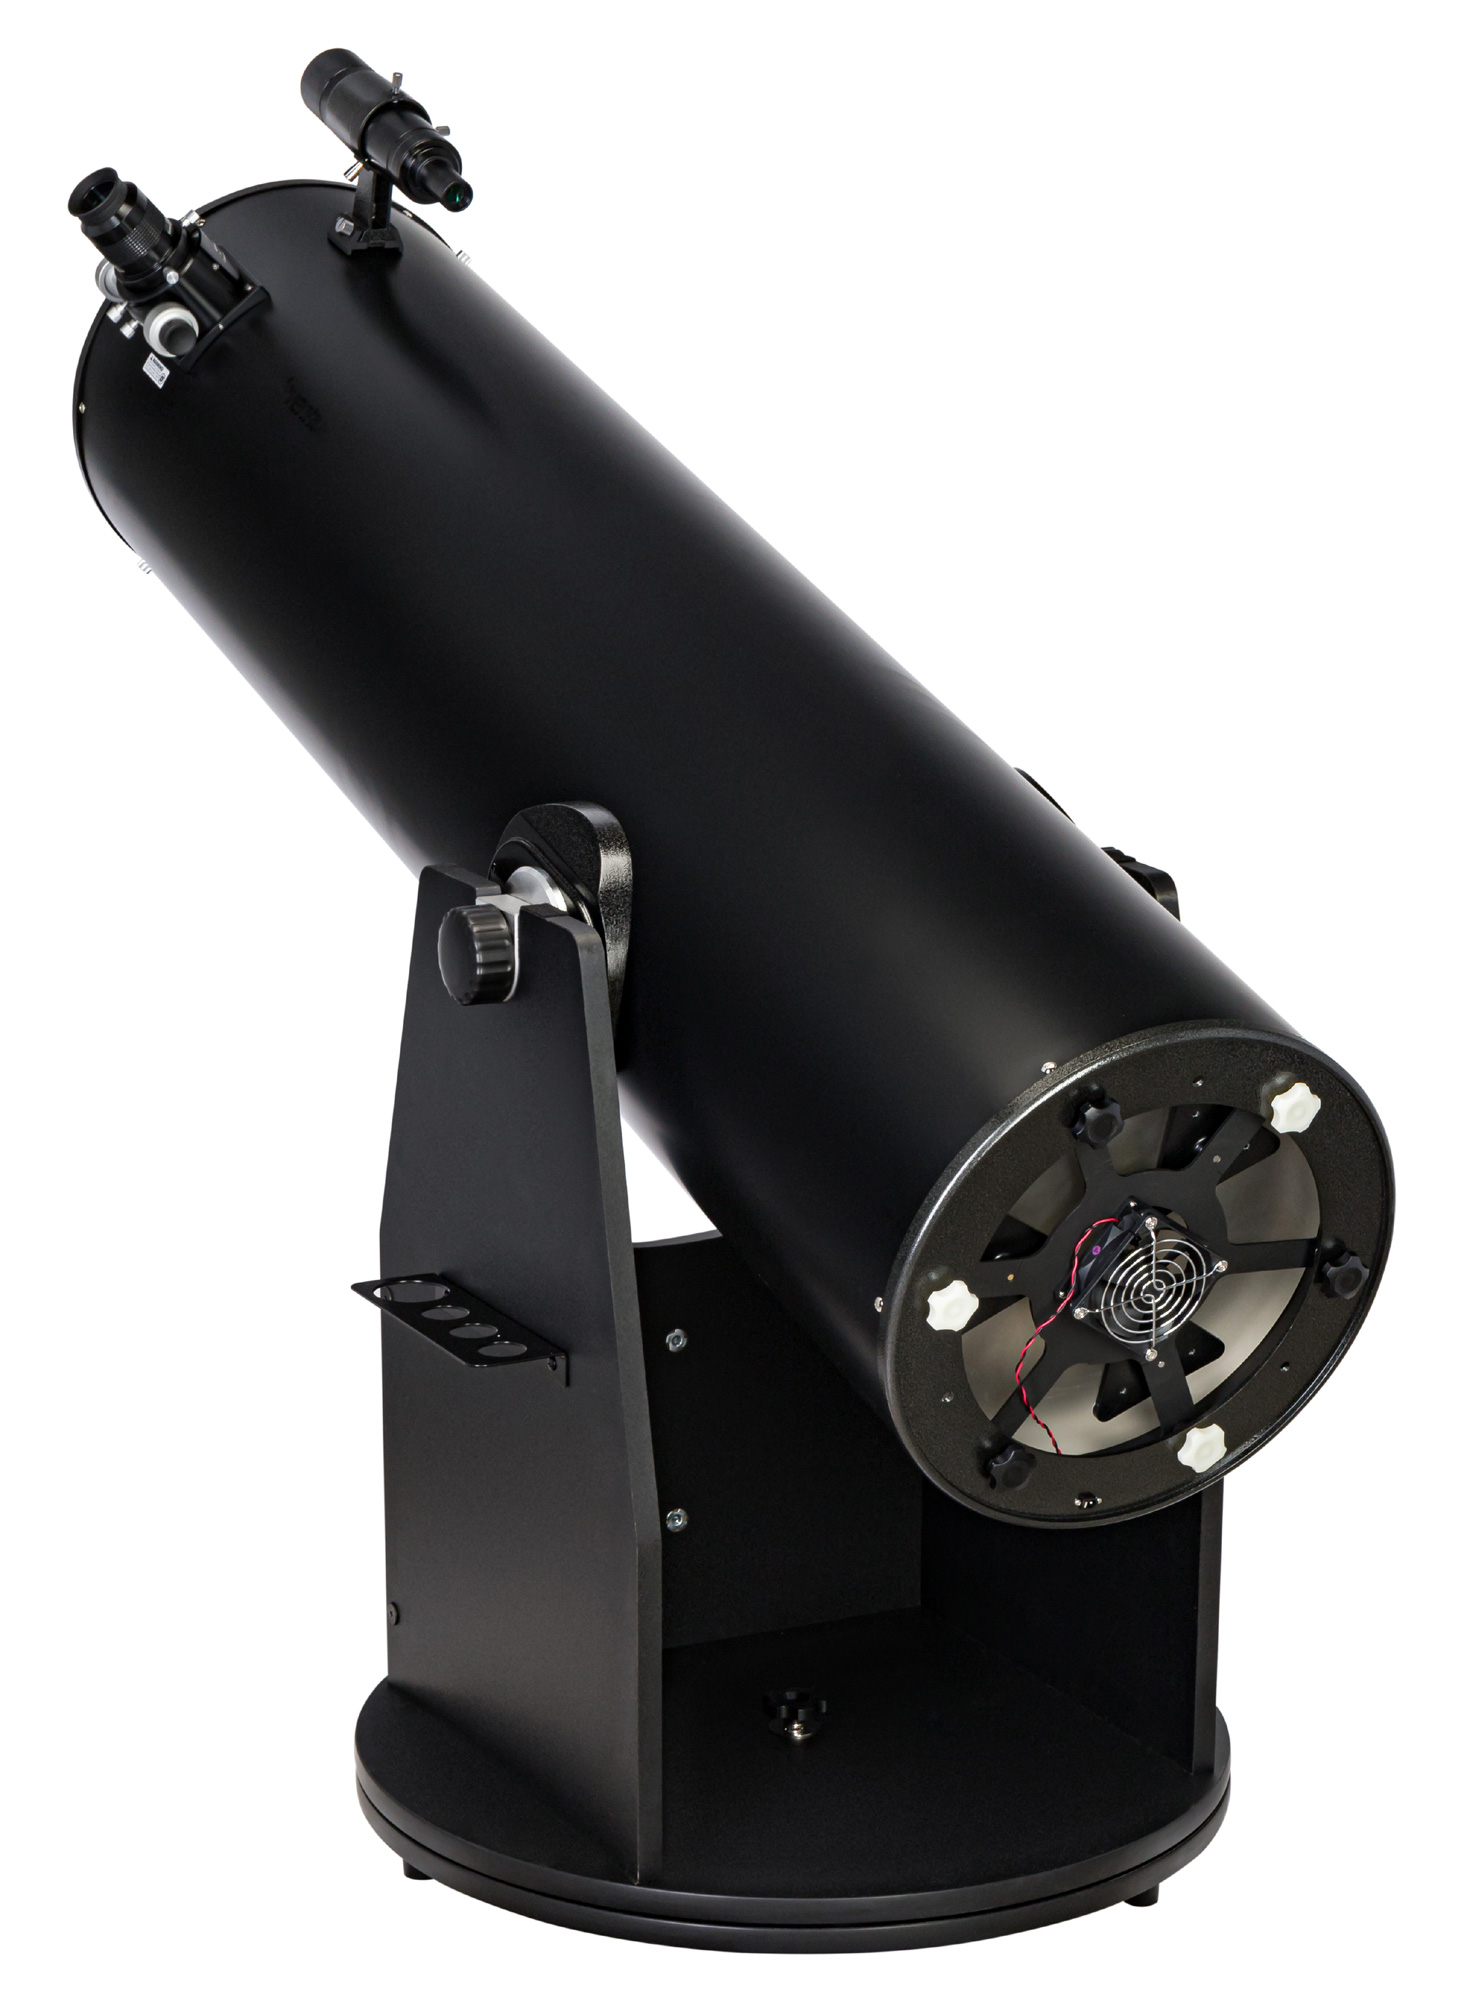 Телескоп Добсона Levenhuk Ra 300N Dob купить по оптимальной цене,  доставка по России, гарантия качества